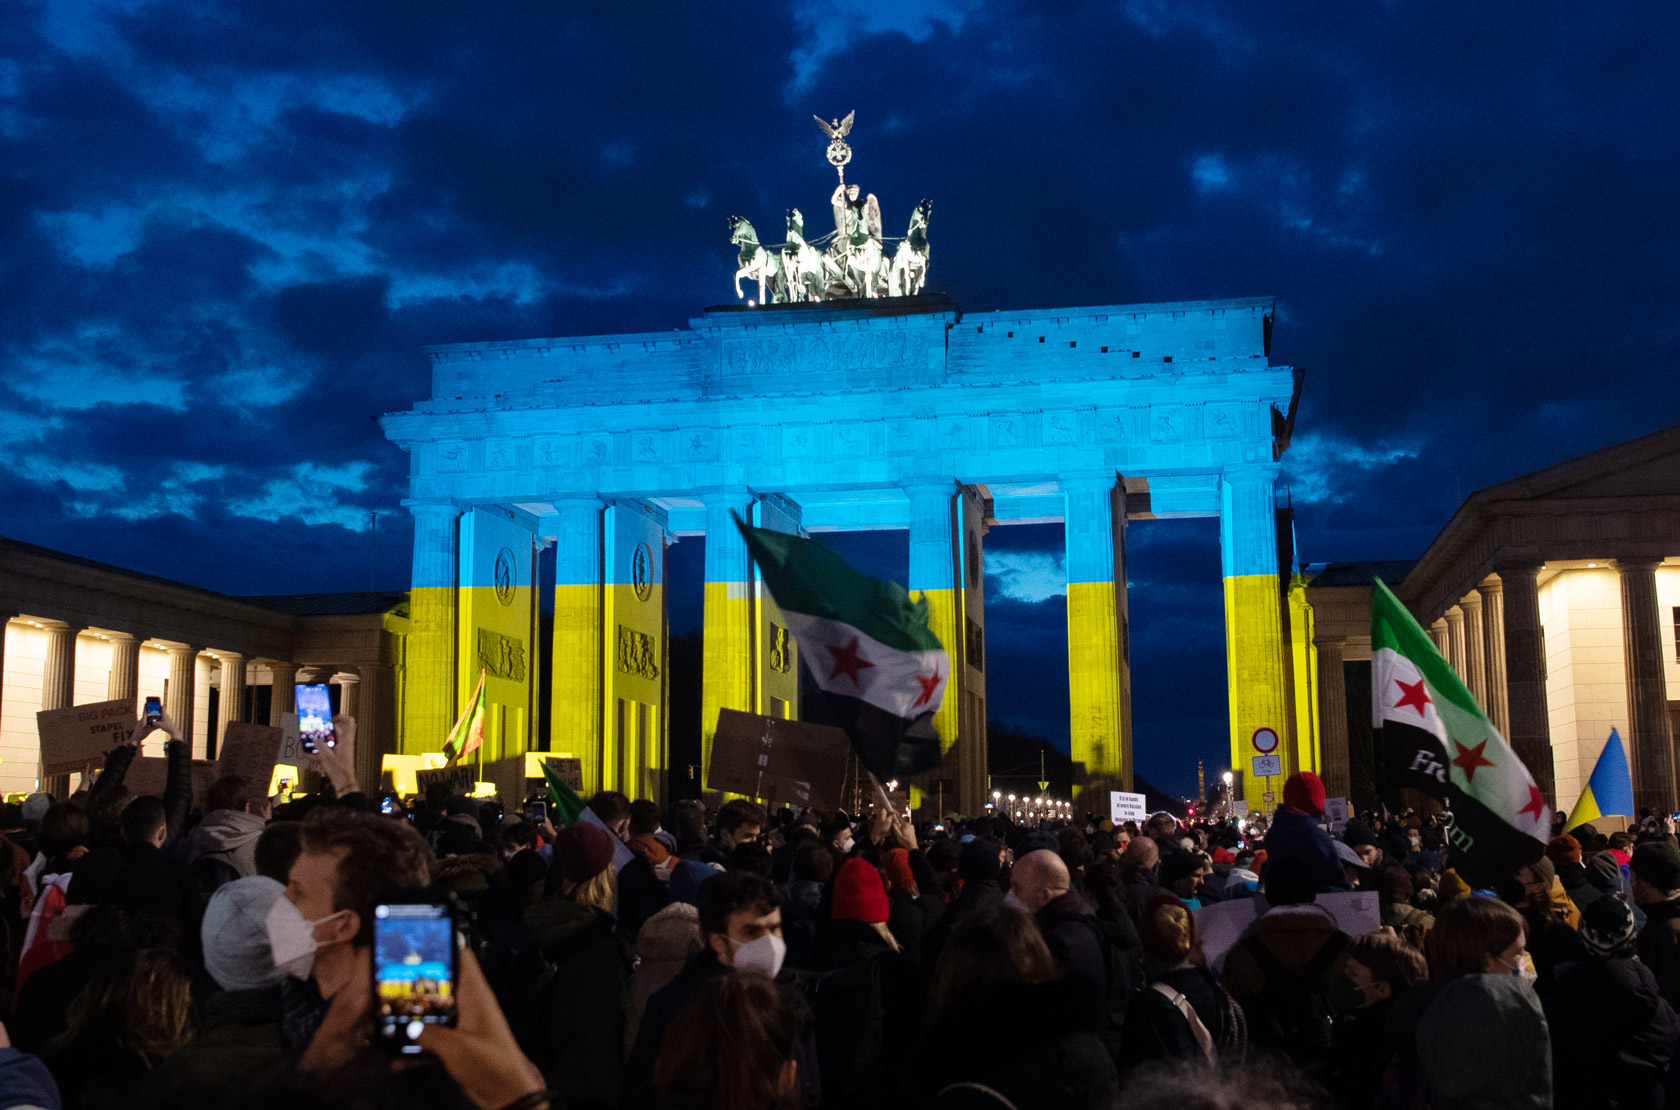 Il 24 febbraio la Porta di Brandeburgo a Berlino si illumina con i colori della bandiera ucraina.